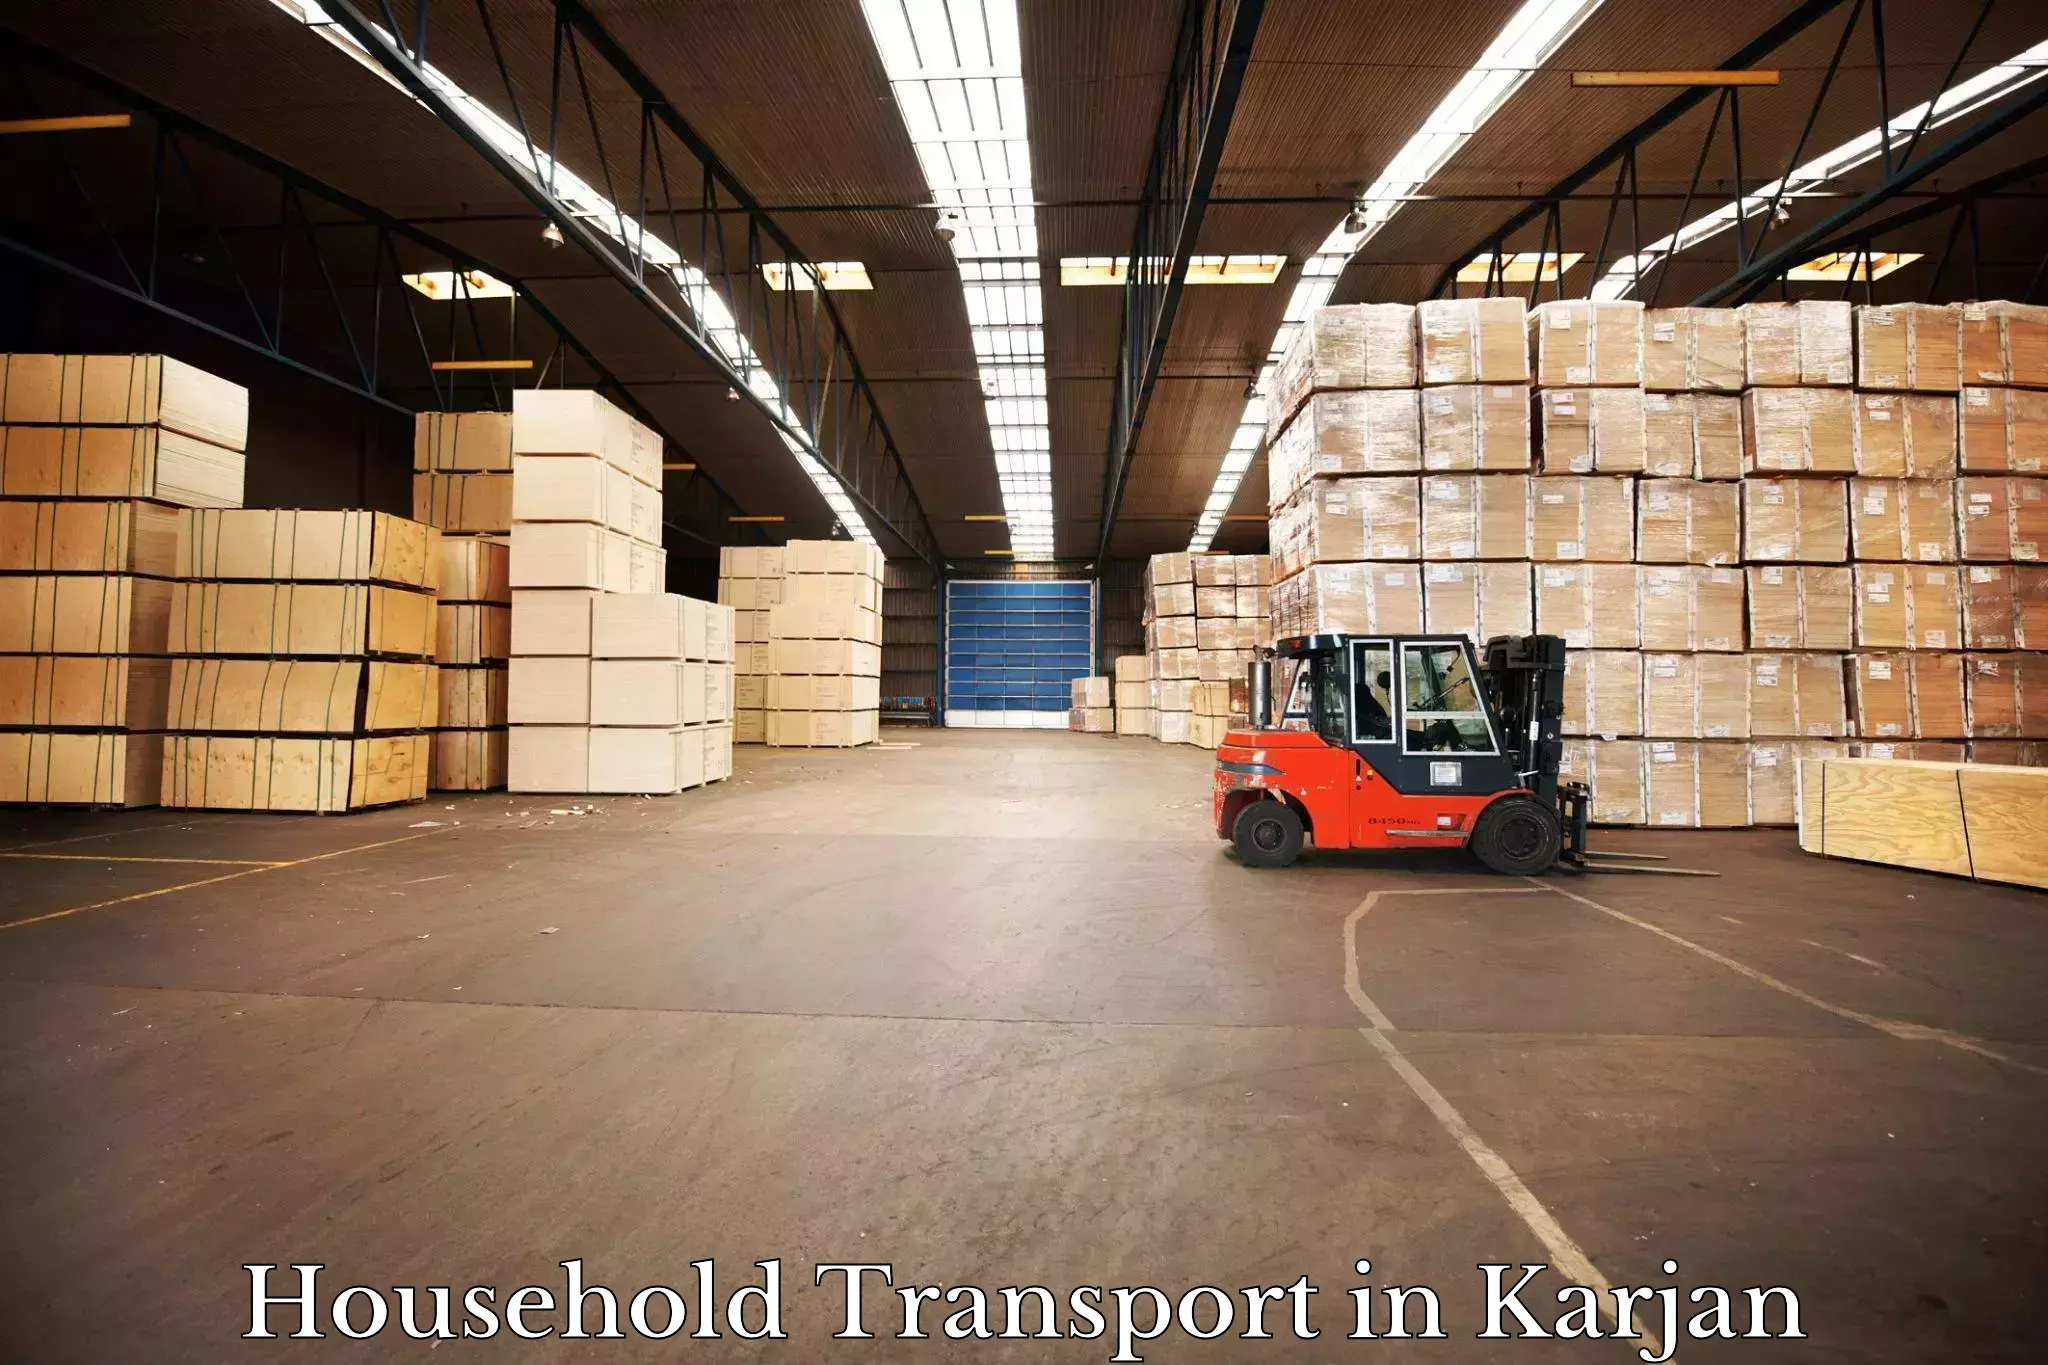 Household goods transport service in Karjan